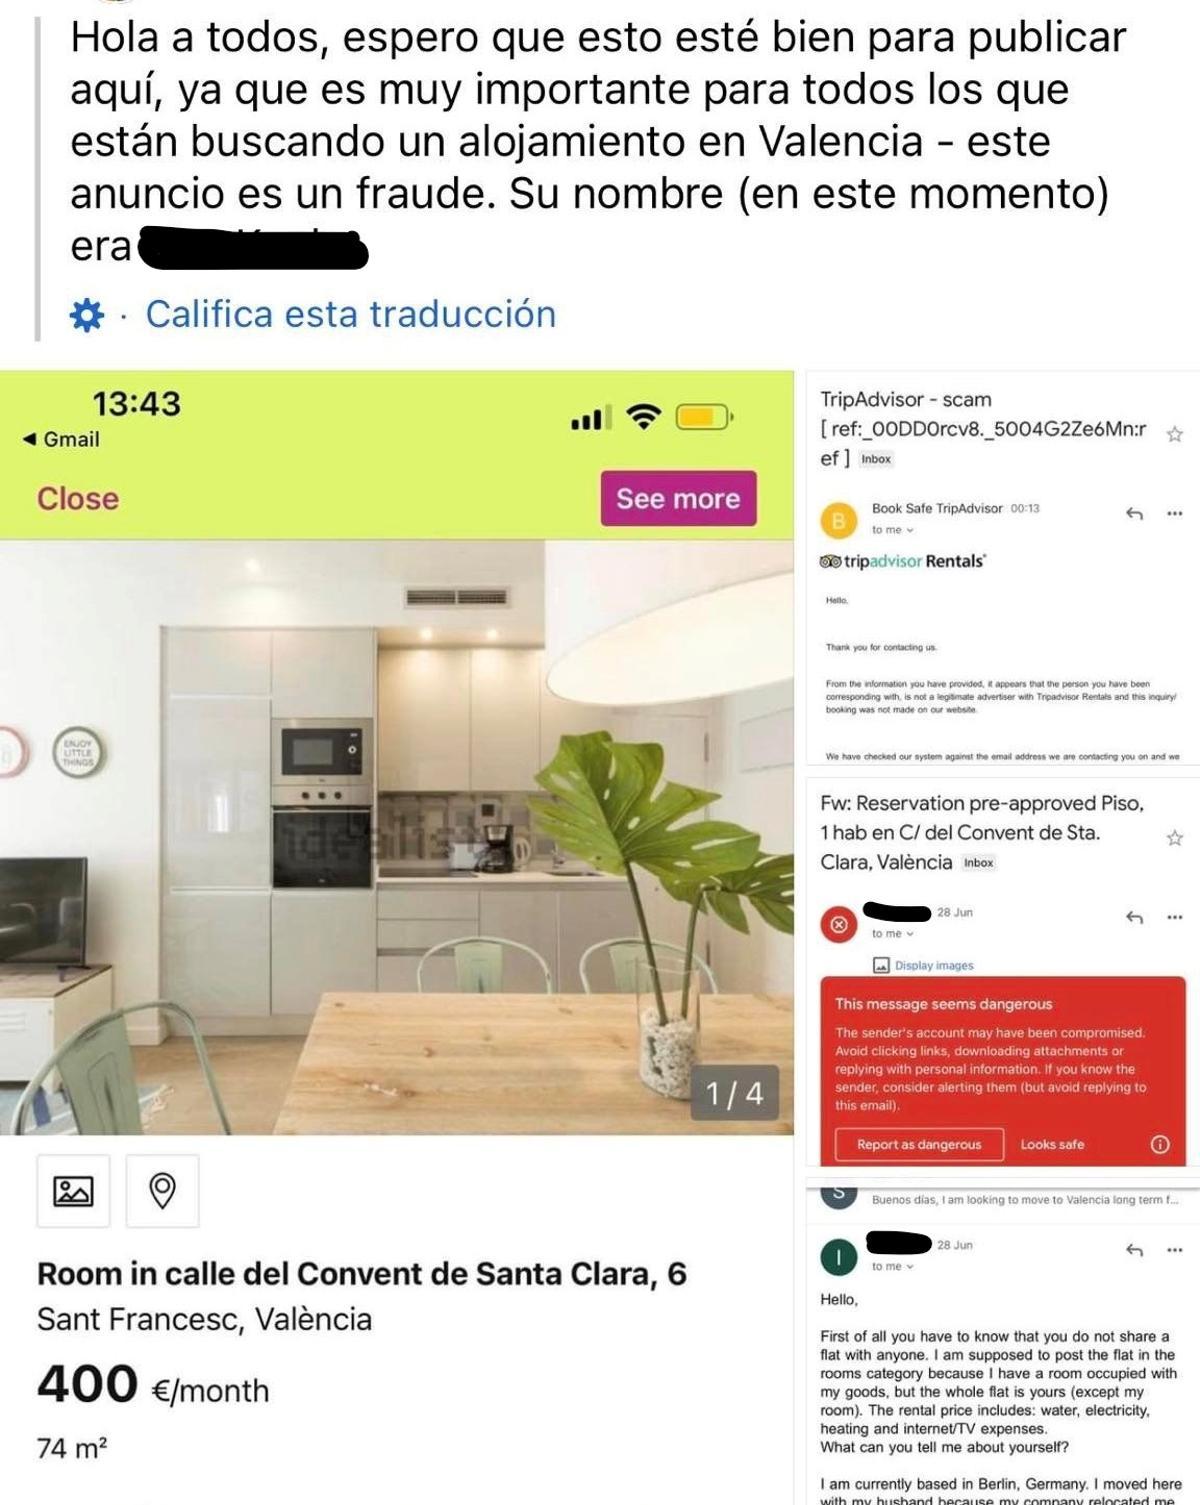 Una de las publicaciones en Facebook que advierte sobre la estafa de la arrendataria en Valencia